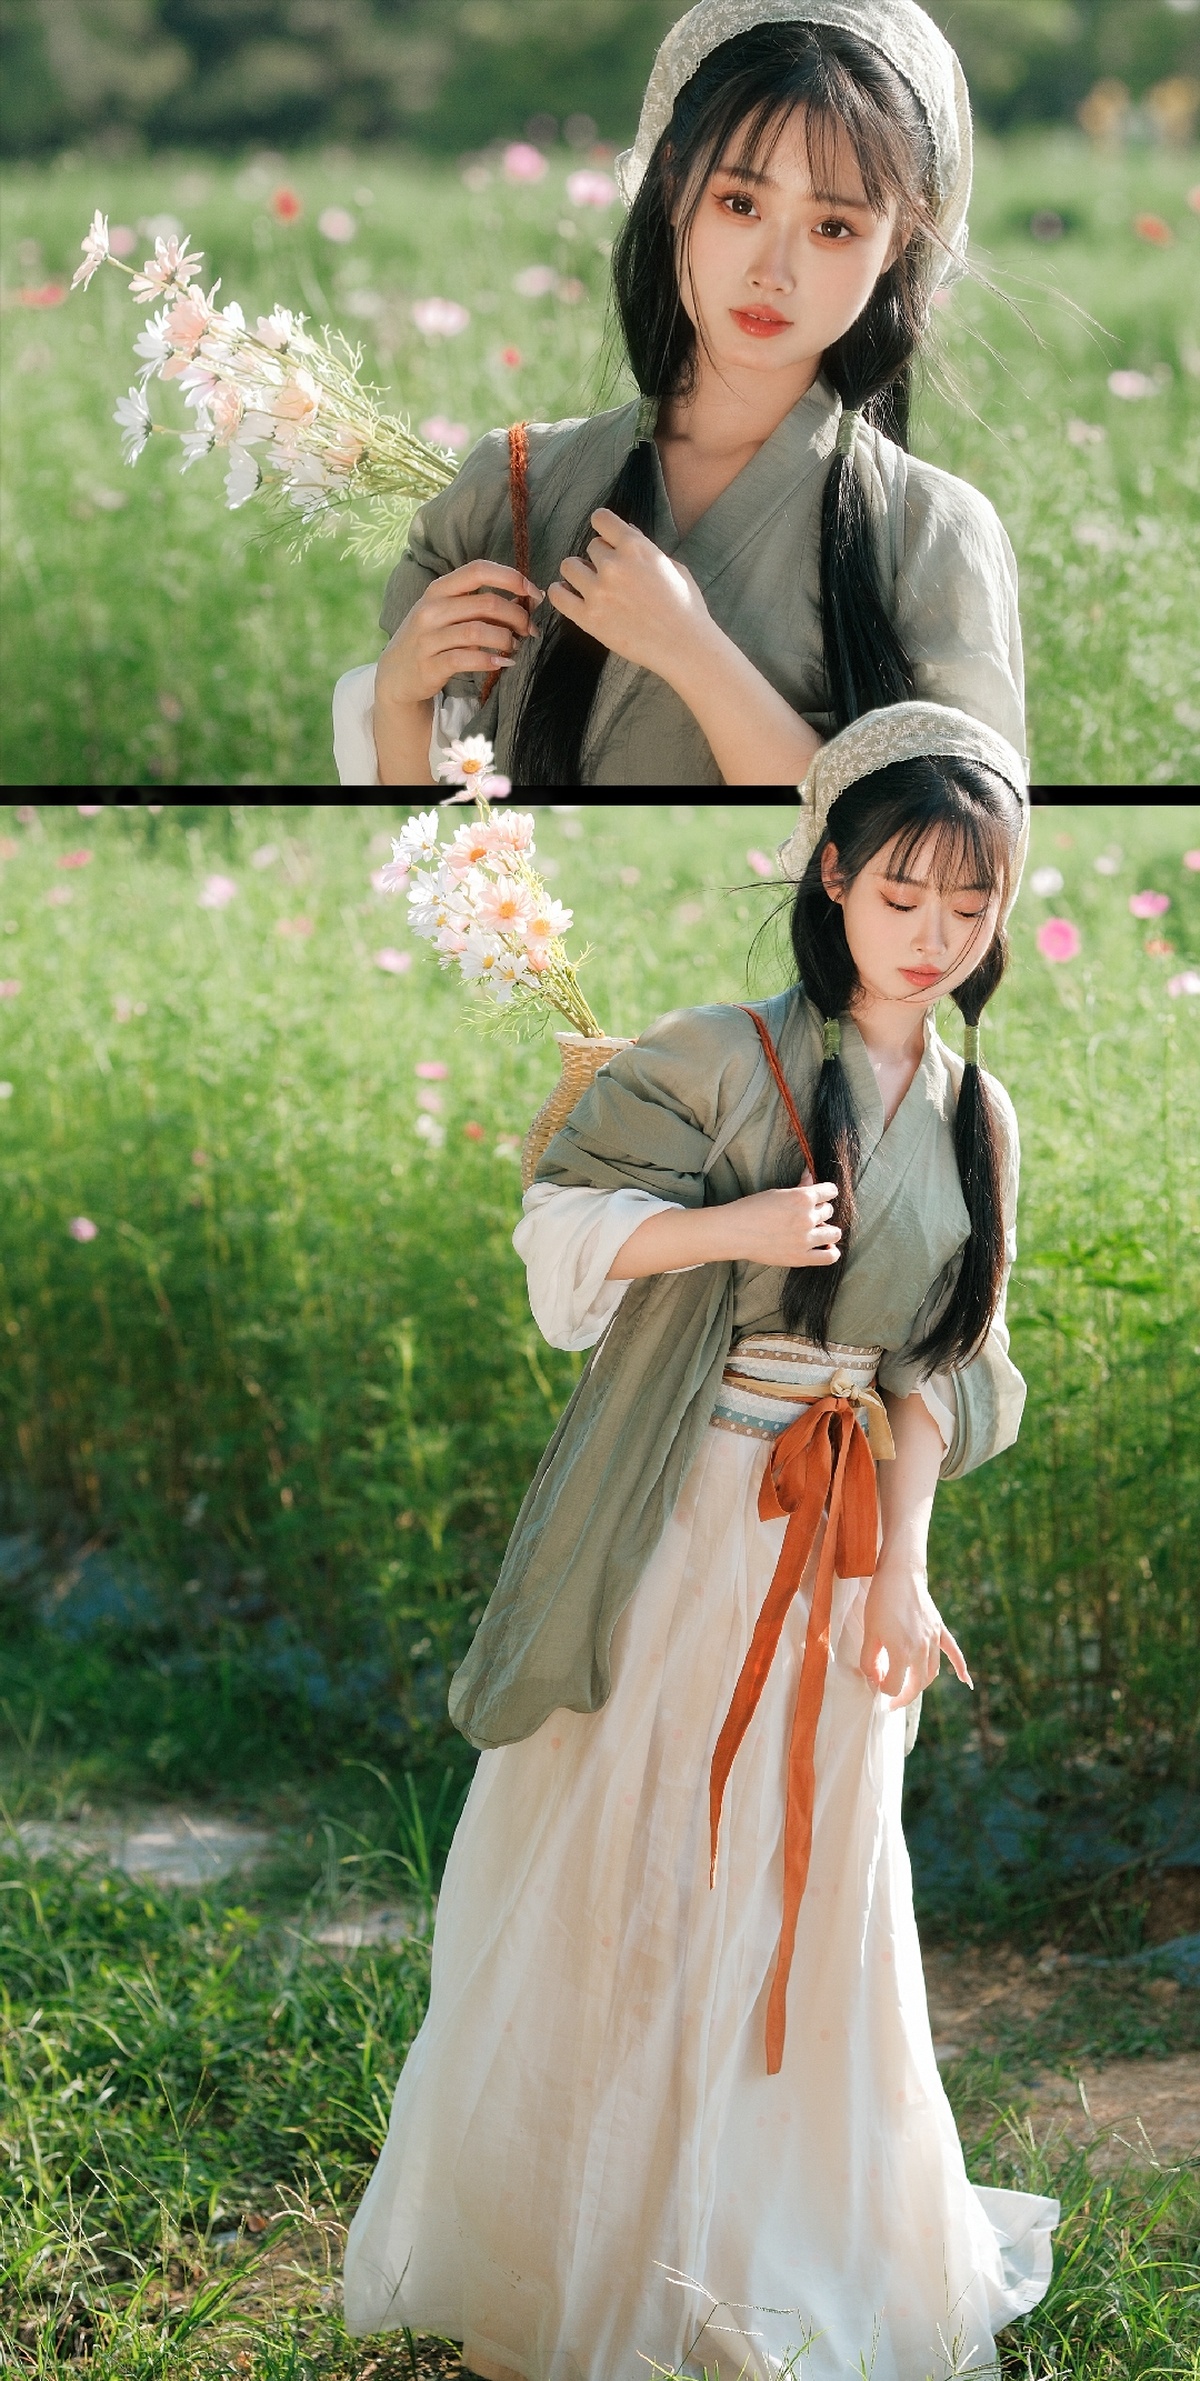 一位穿着costume的年轻女子在田野中拿着花。